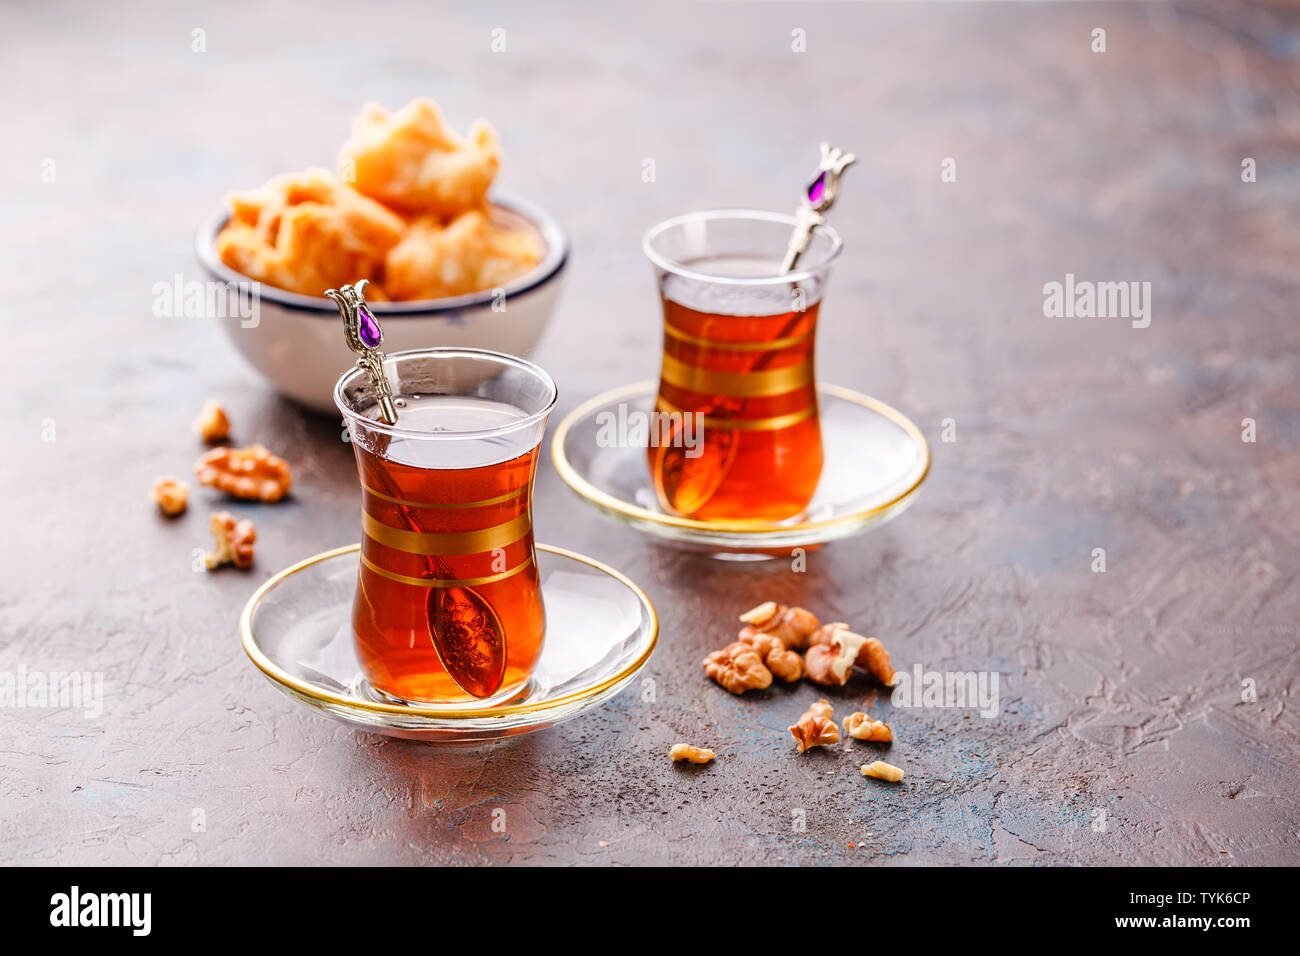 L'Arabe du Moyen Orient ou de thé à la menthe dans une tasse de verre traditionnelle et loukoums Baklava. Ramadan kareem. Eid Mubarak. Jours fériés islamiques decoratio Banque D'Images